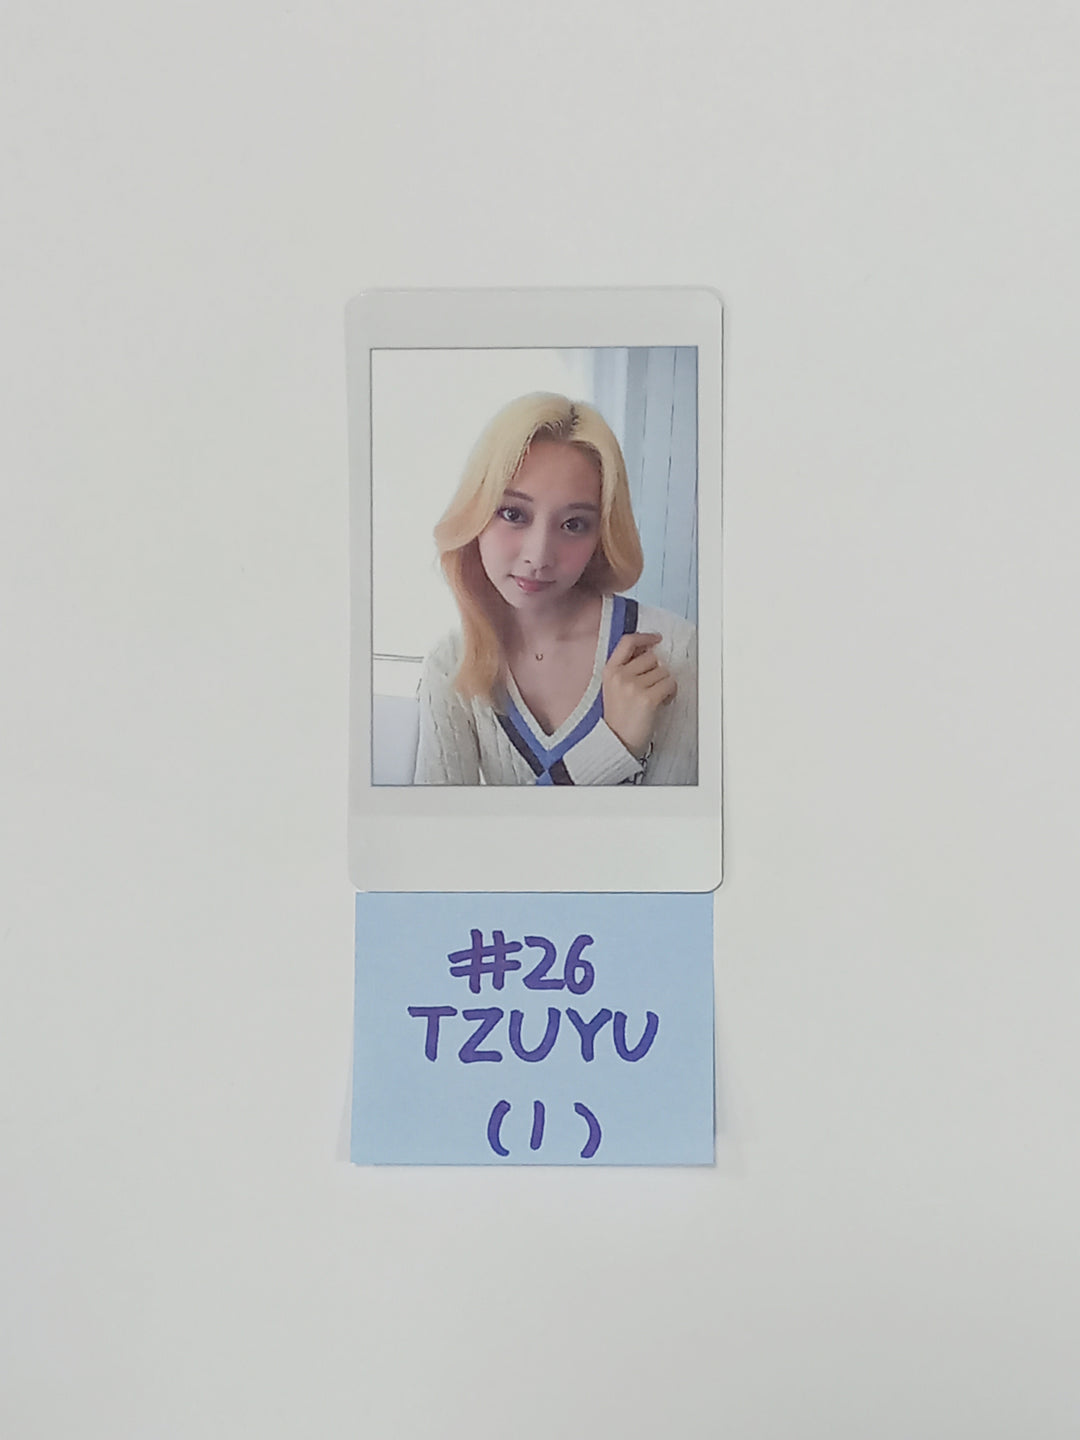 Twice 7th Anniversary EVENT - JYP SHOP スペシャルプレゼント ポラロイド型フォトカード